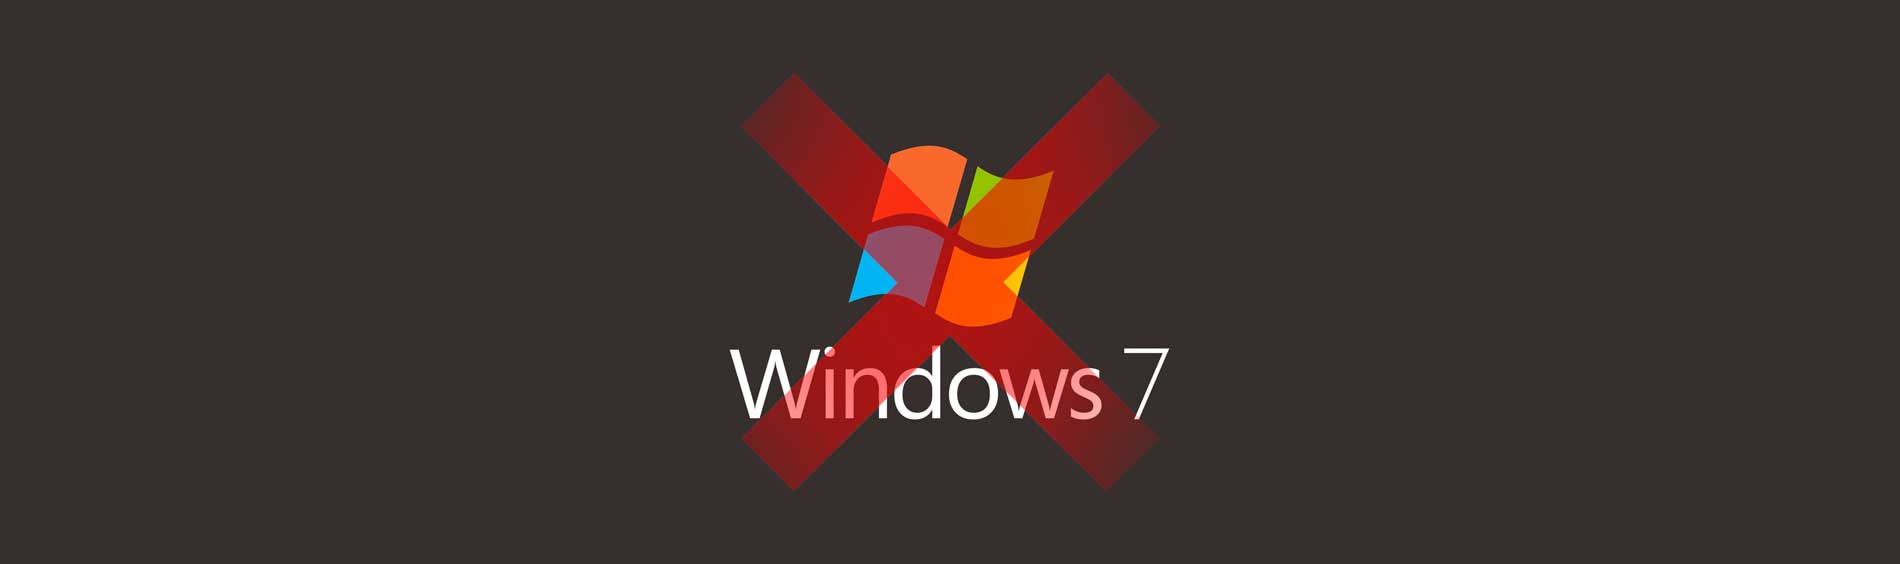 Fin du support windows 7